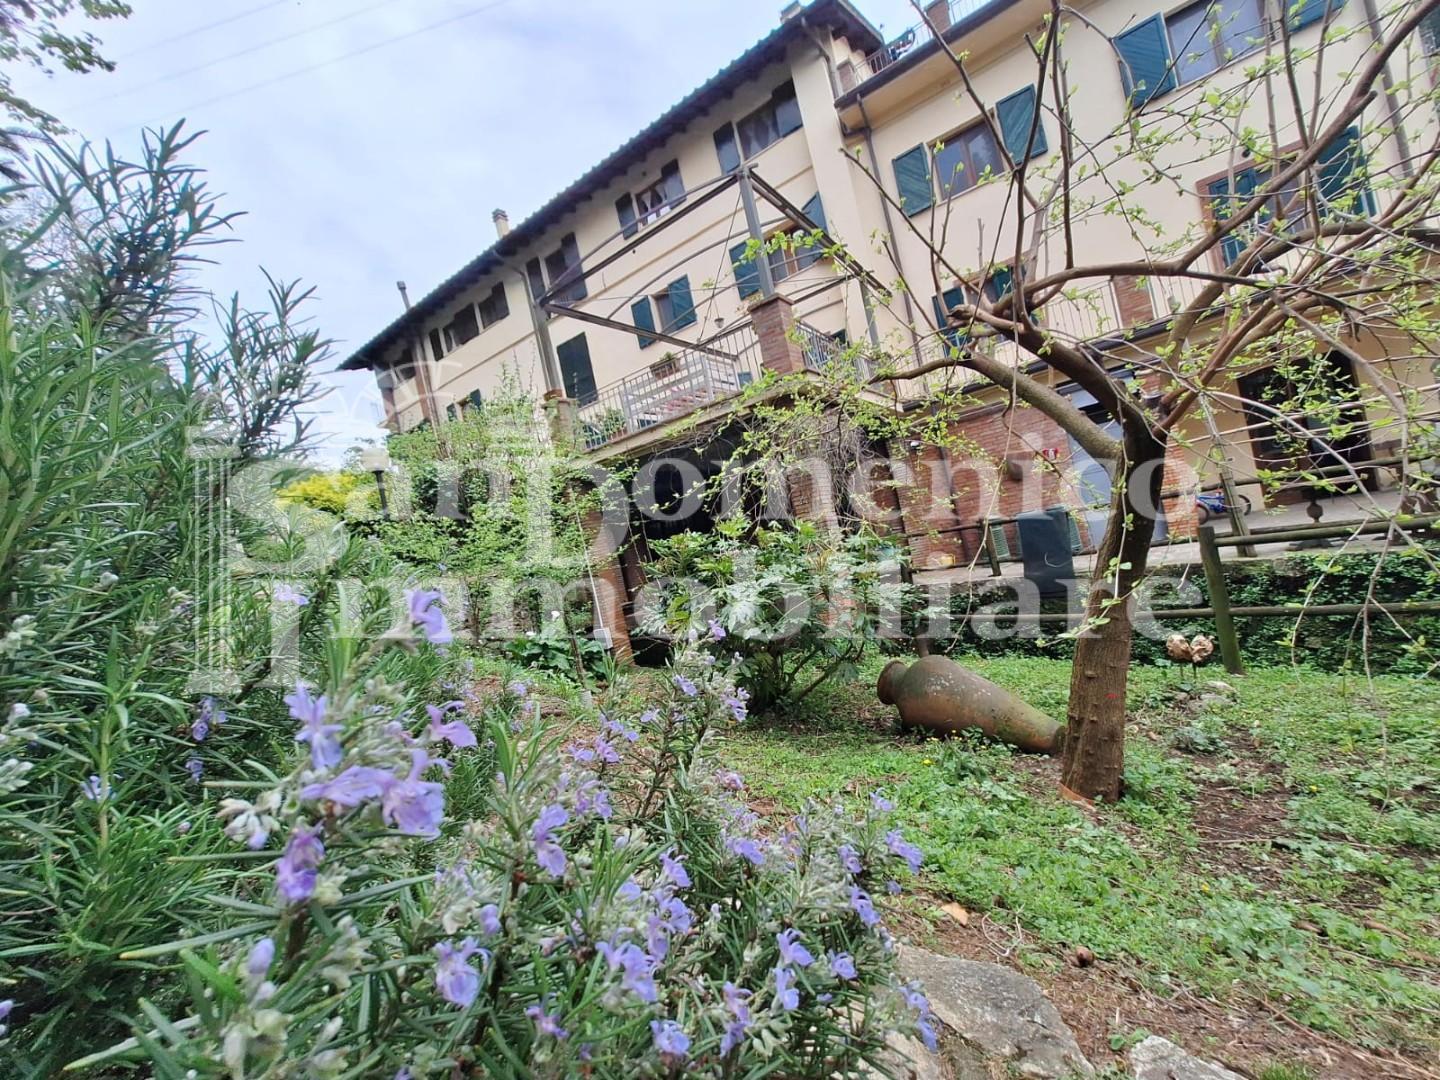 Rustico con giardino, San Giuliano Terme molina di quosa